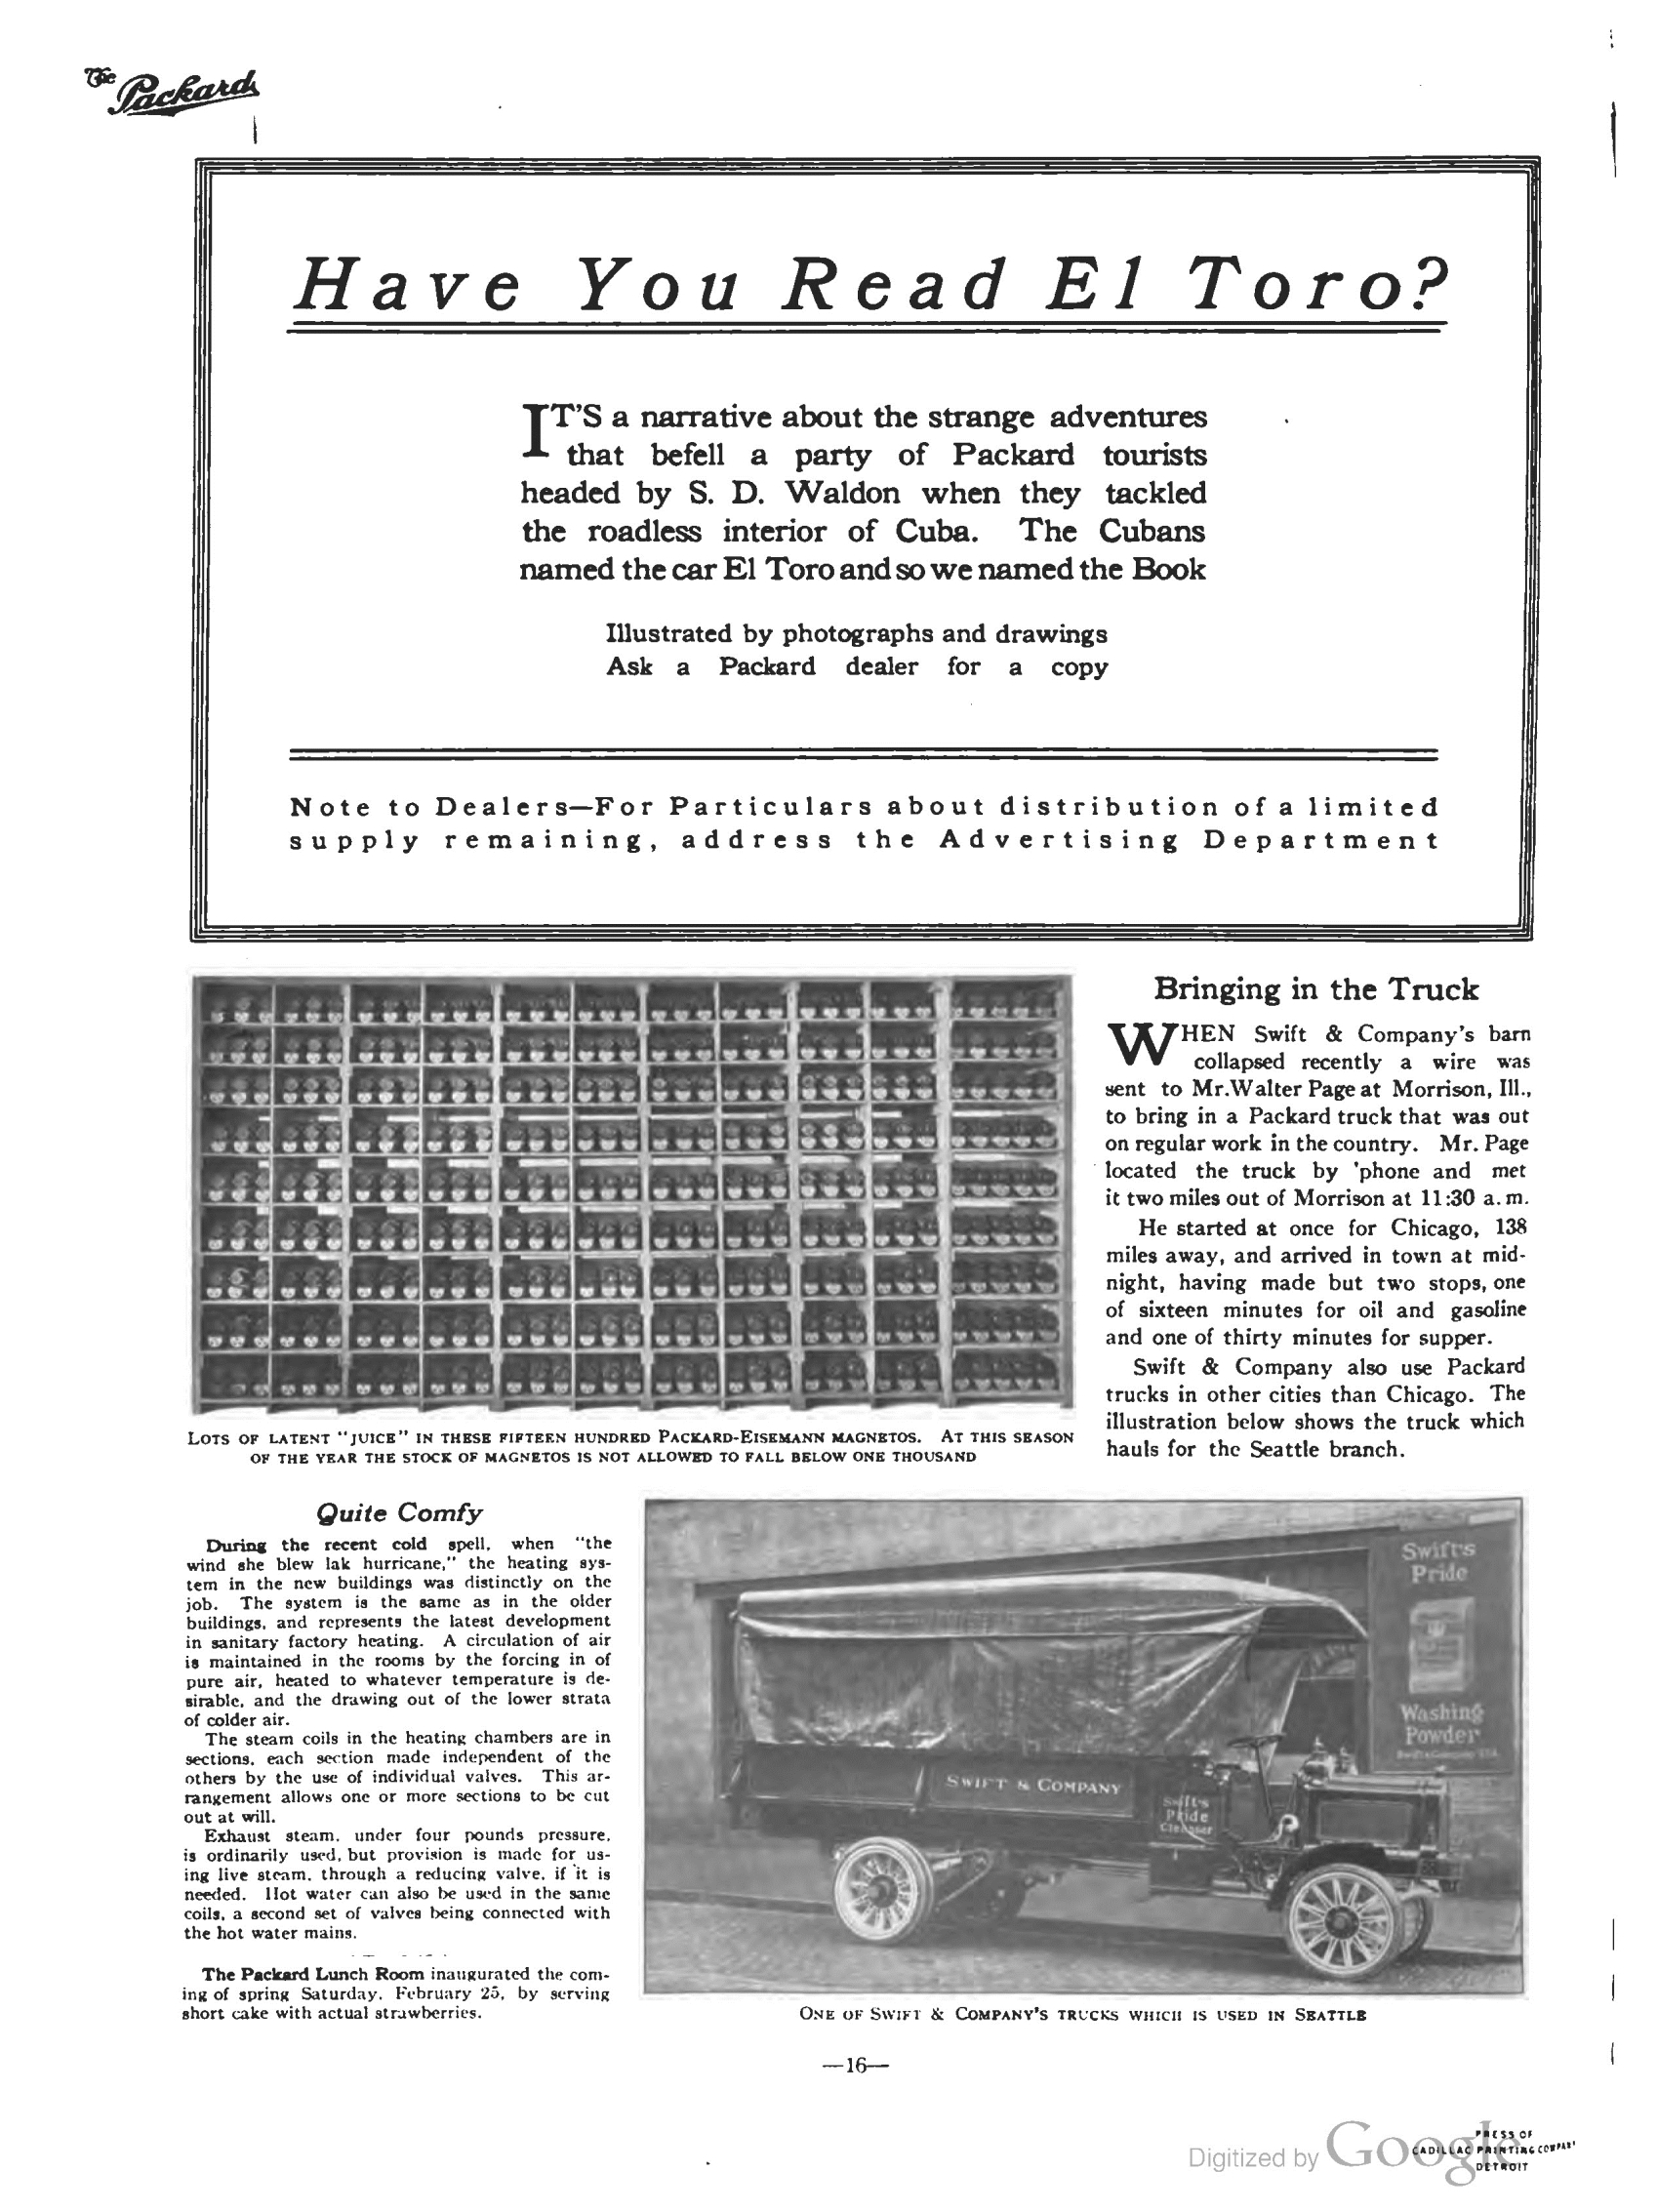 1911_The_Packard_Newsletter-038